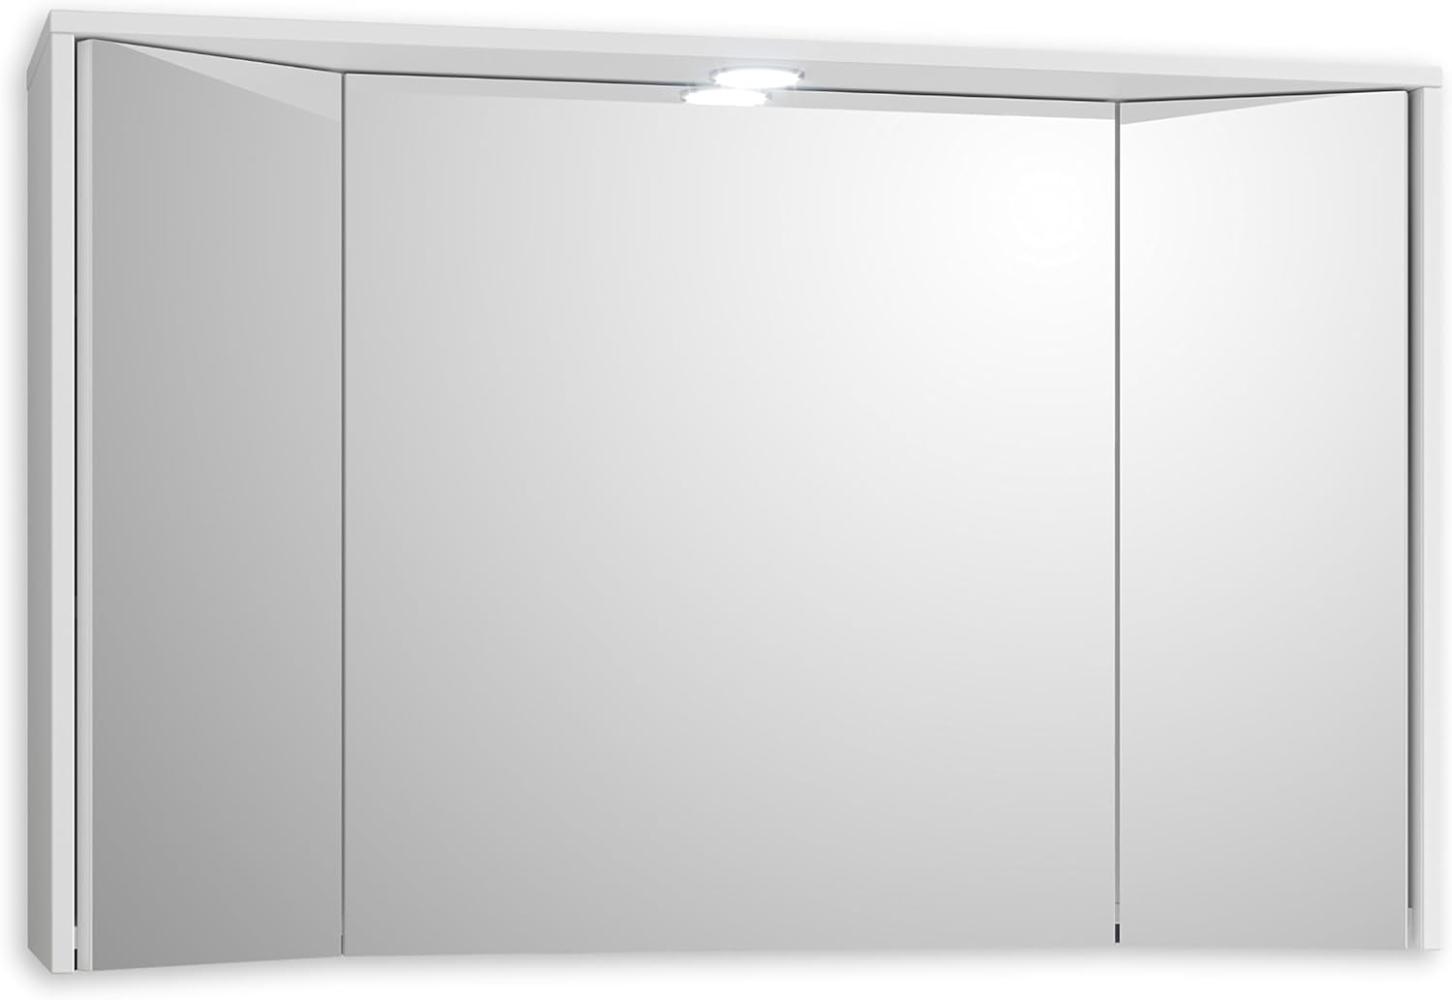 Stella Trading THREE Spiegelschrank Bad mit Beleuchtung in Weiß - Badezimmerspiegel Schrank mit viel Stauraum - 106 x 68 x 27 cm (B/H/T) Bild 1